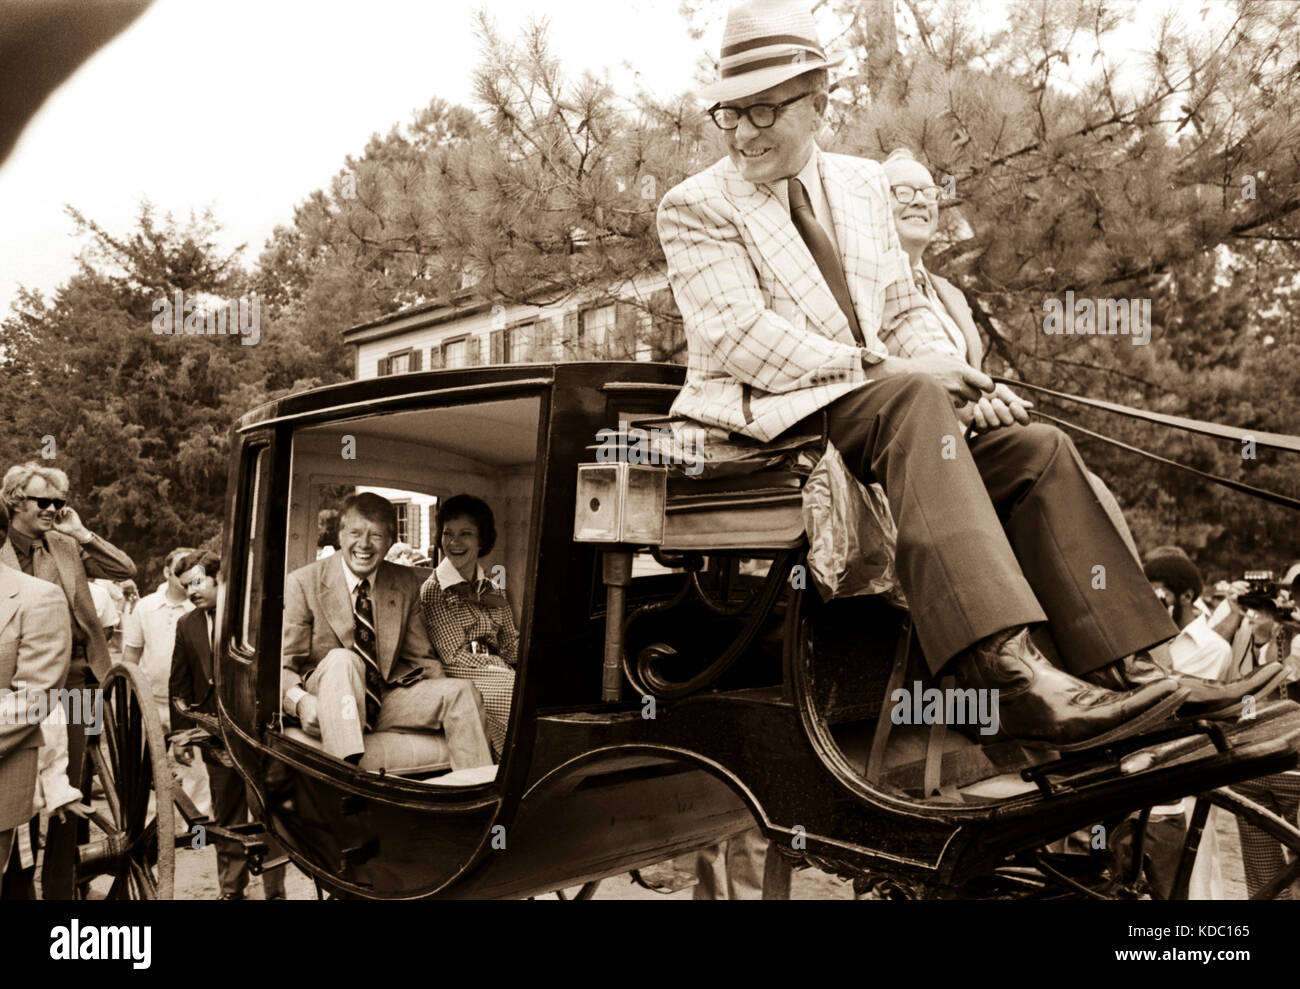 Anlässlich der zweihundertjährigen US-Feier am 4. Juli 1976 haben der Kandidat Jimmy Carter und seine Frau Rosalynn Und Tochter, Amy, fahren in einem Wagen aus den 1850er Jahren. Stockfoto